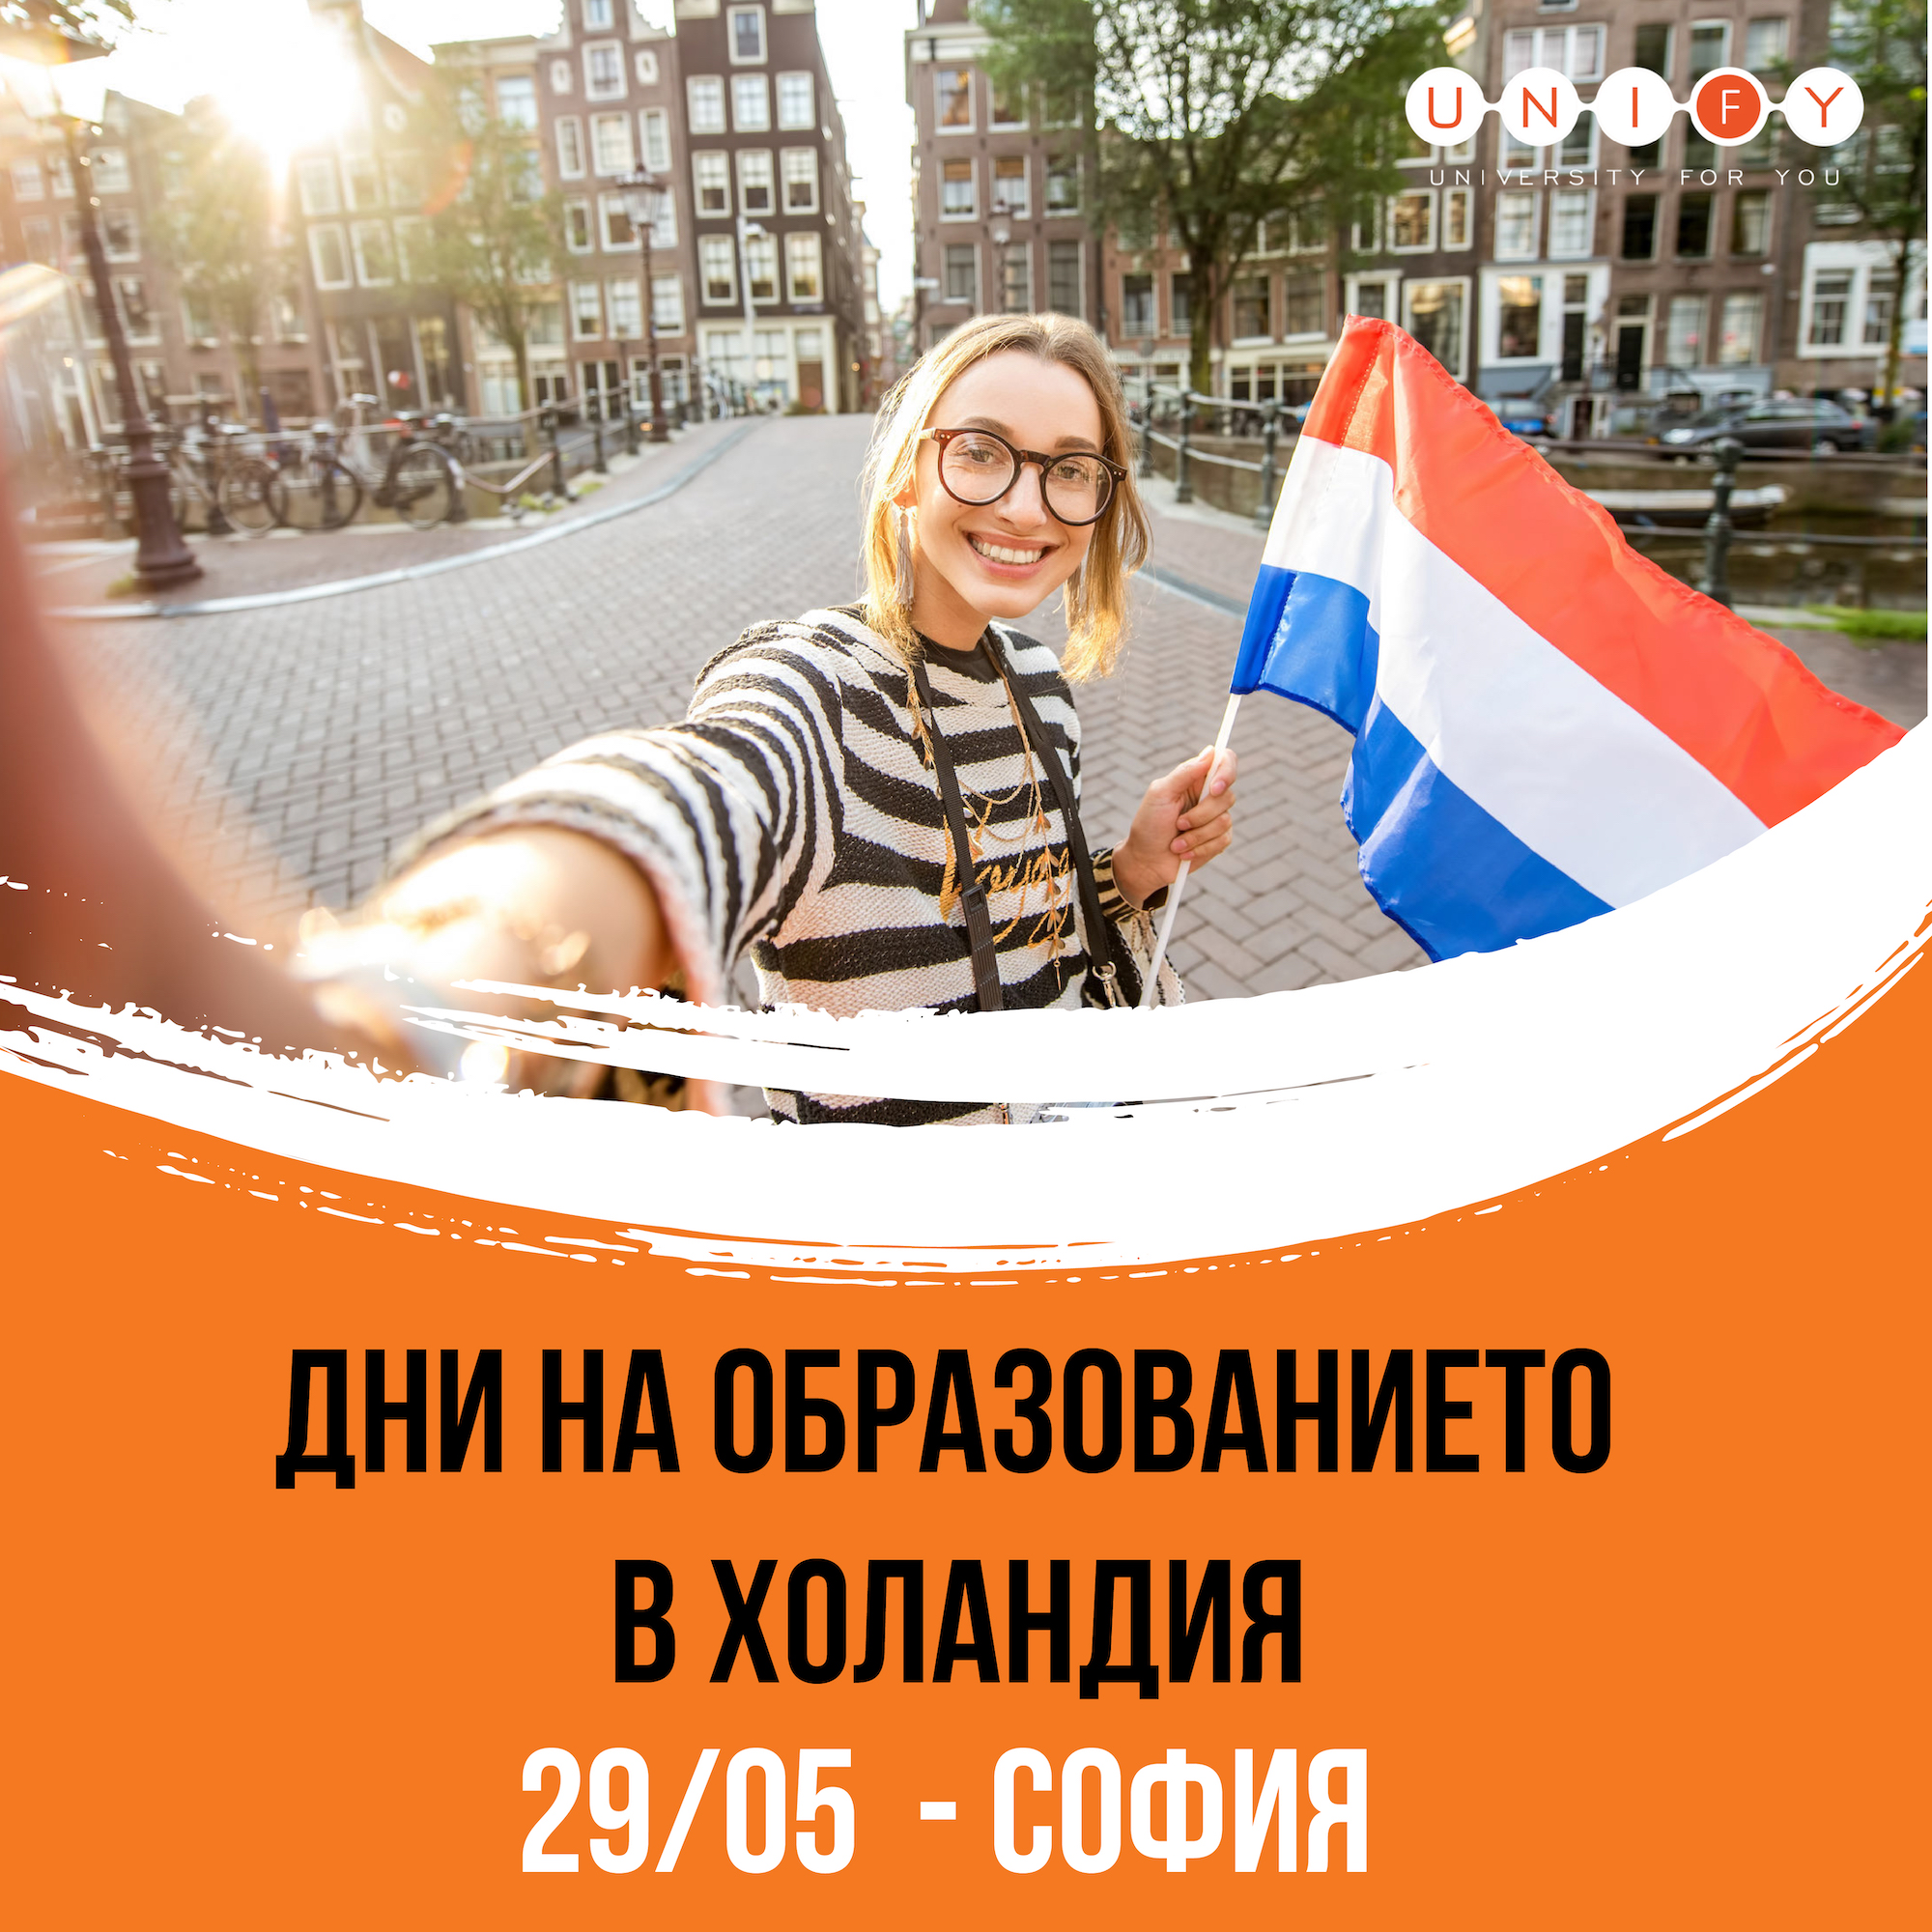 СОФИЯ: Дни на образованието в Холандия 2021